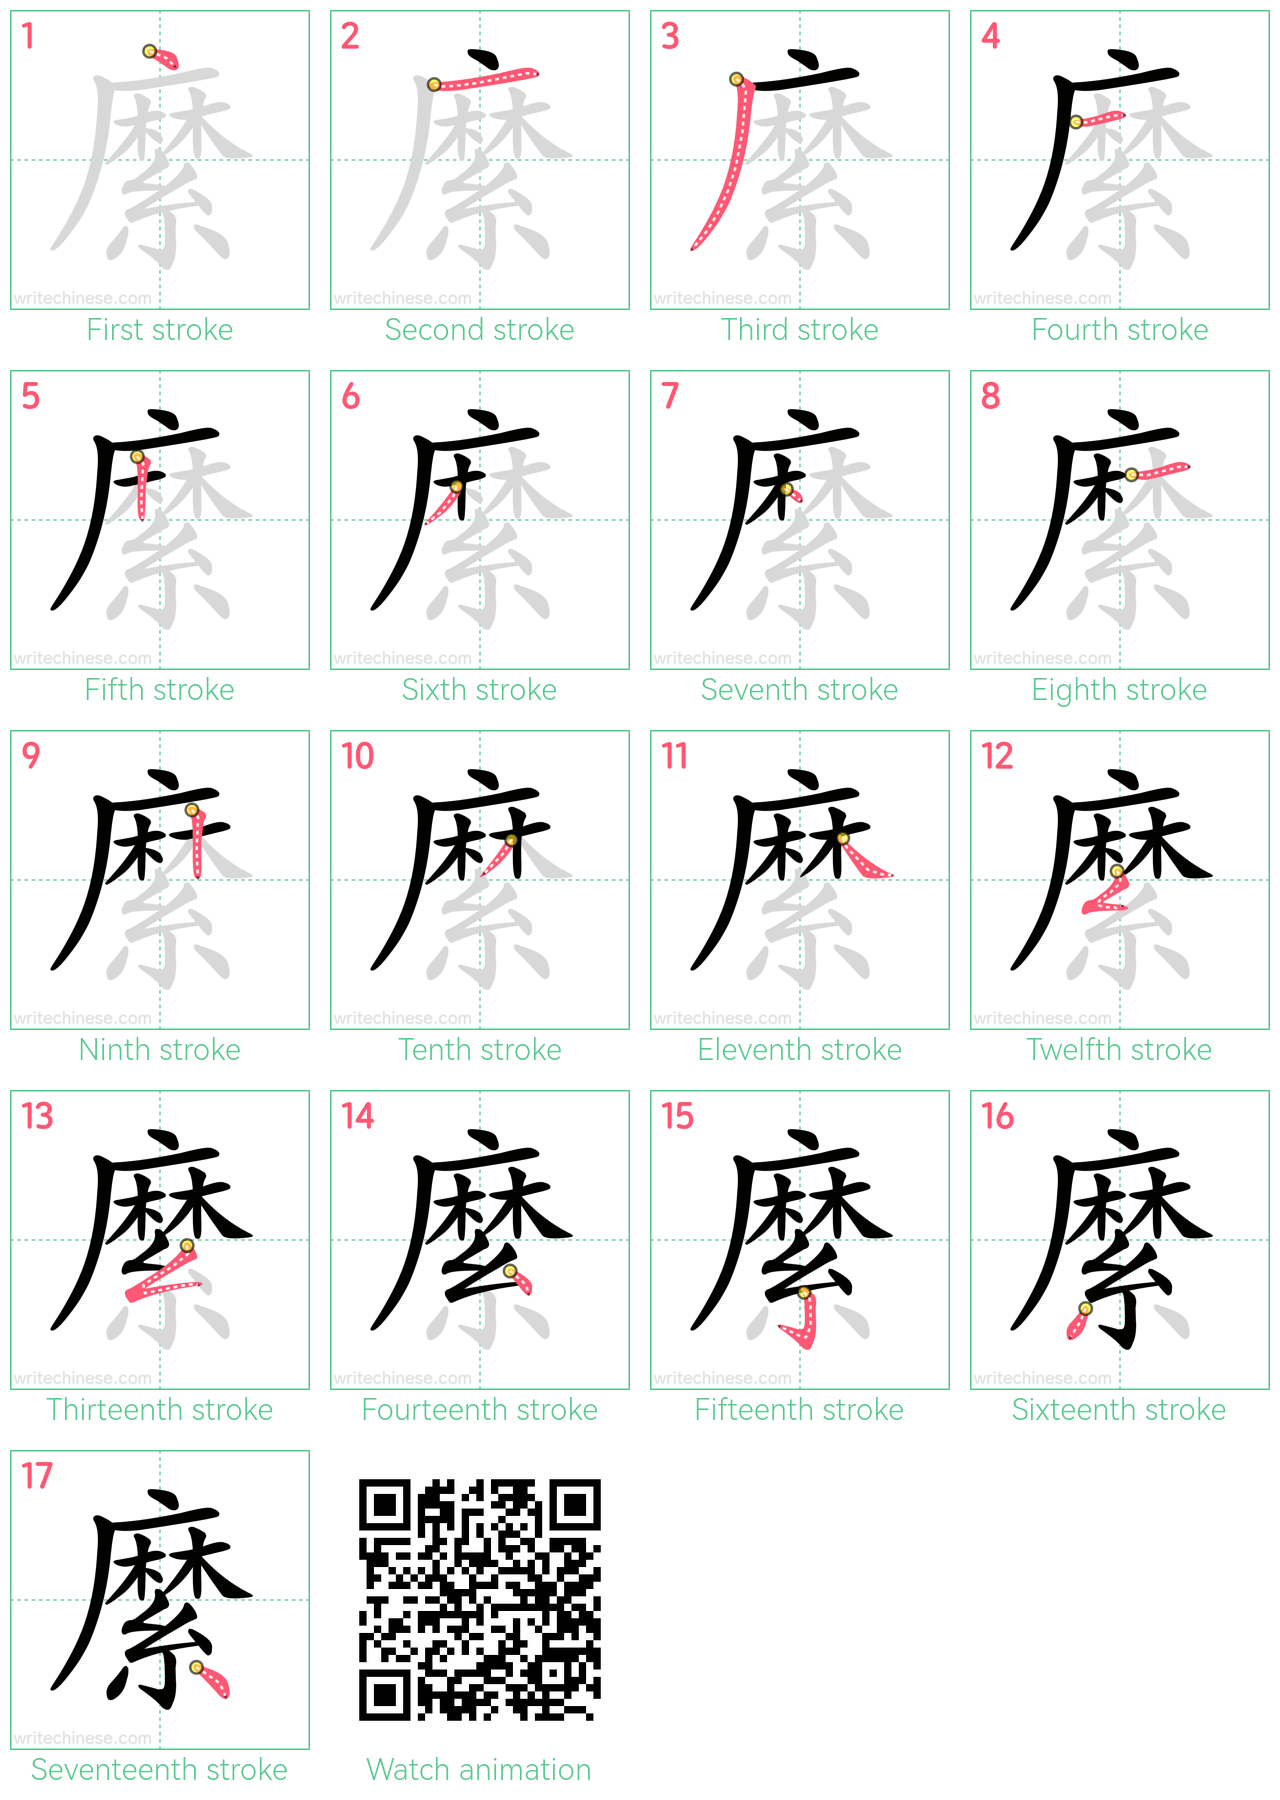 縻 step-by-step stroke order diagrams